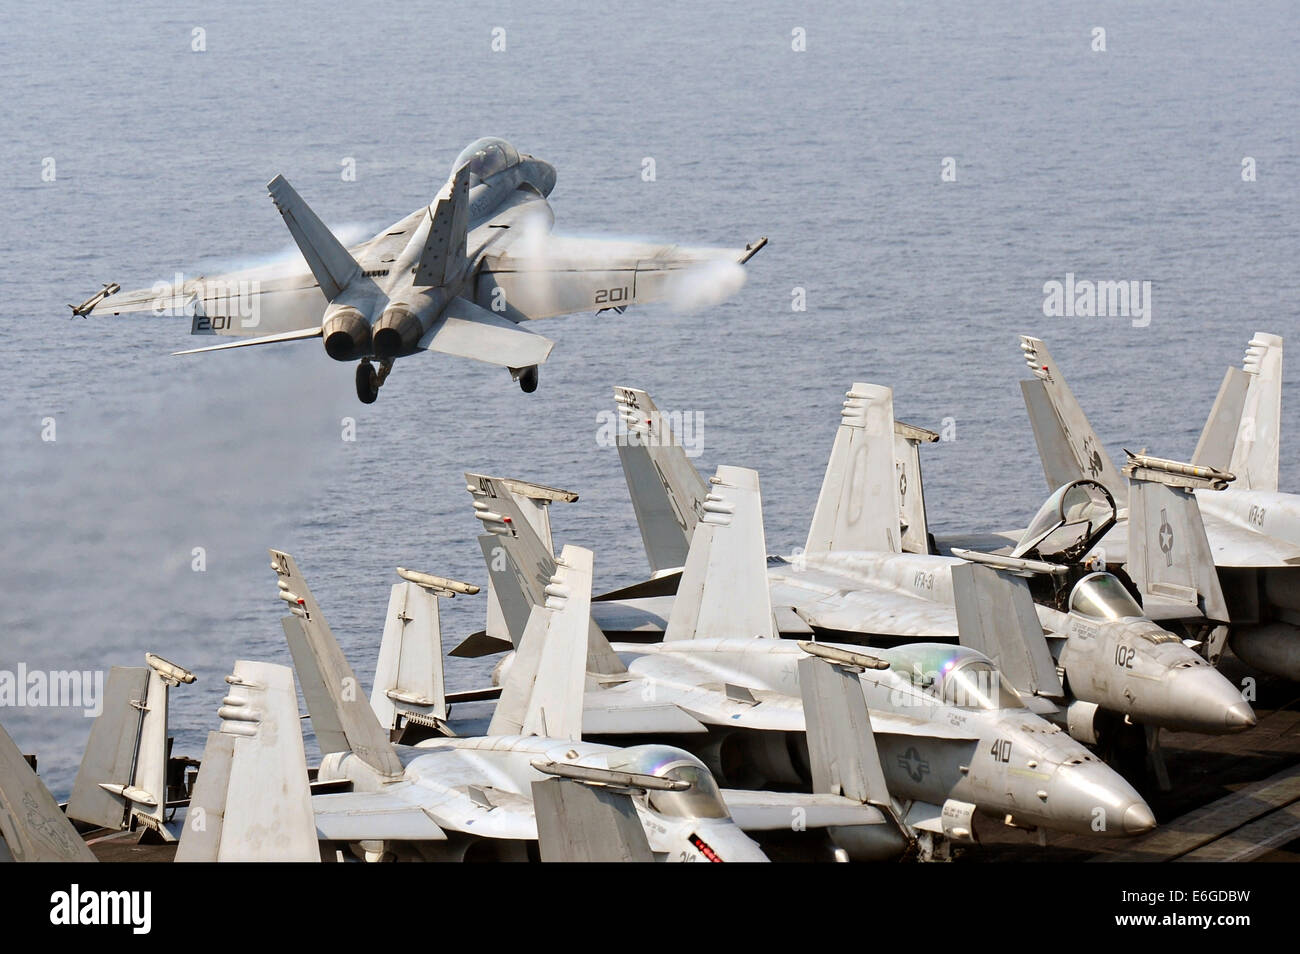 Marina de los EE.UU. F/A-18F Super Hornet aviones de combate despega desde la cubierta de vuelo del portaaviones USS George H.W. Bush en una misión para apoyar a los militares iraquíes el 16 de agosto de 2014. El presidente Obama autorizó ataques aéreos dirigidos a proteger al personal estadounidense de extremistas conocidos como el Estado islámico en Irak y el Levante. Foto de stock